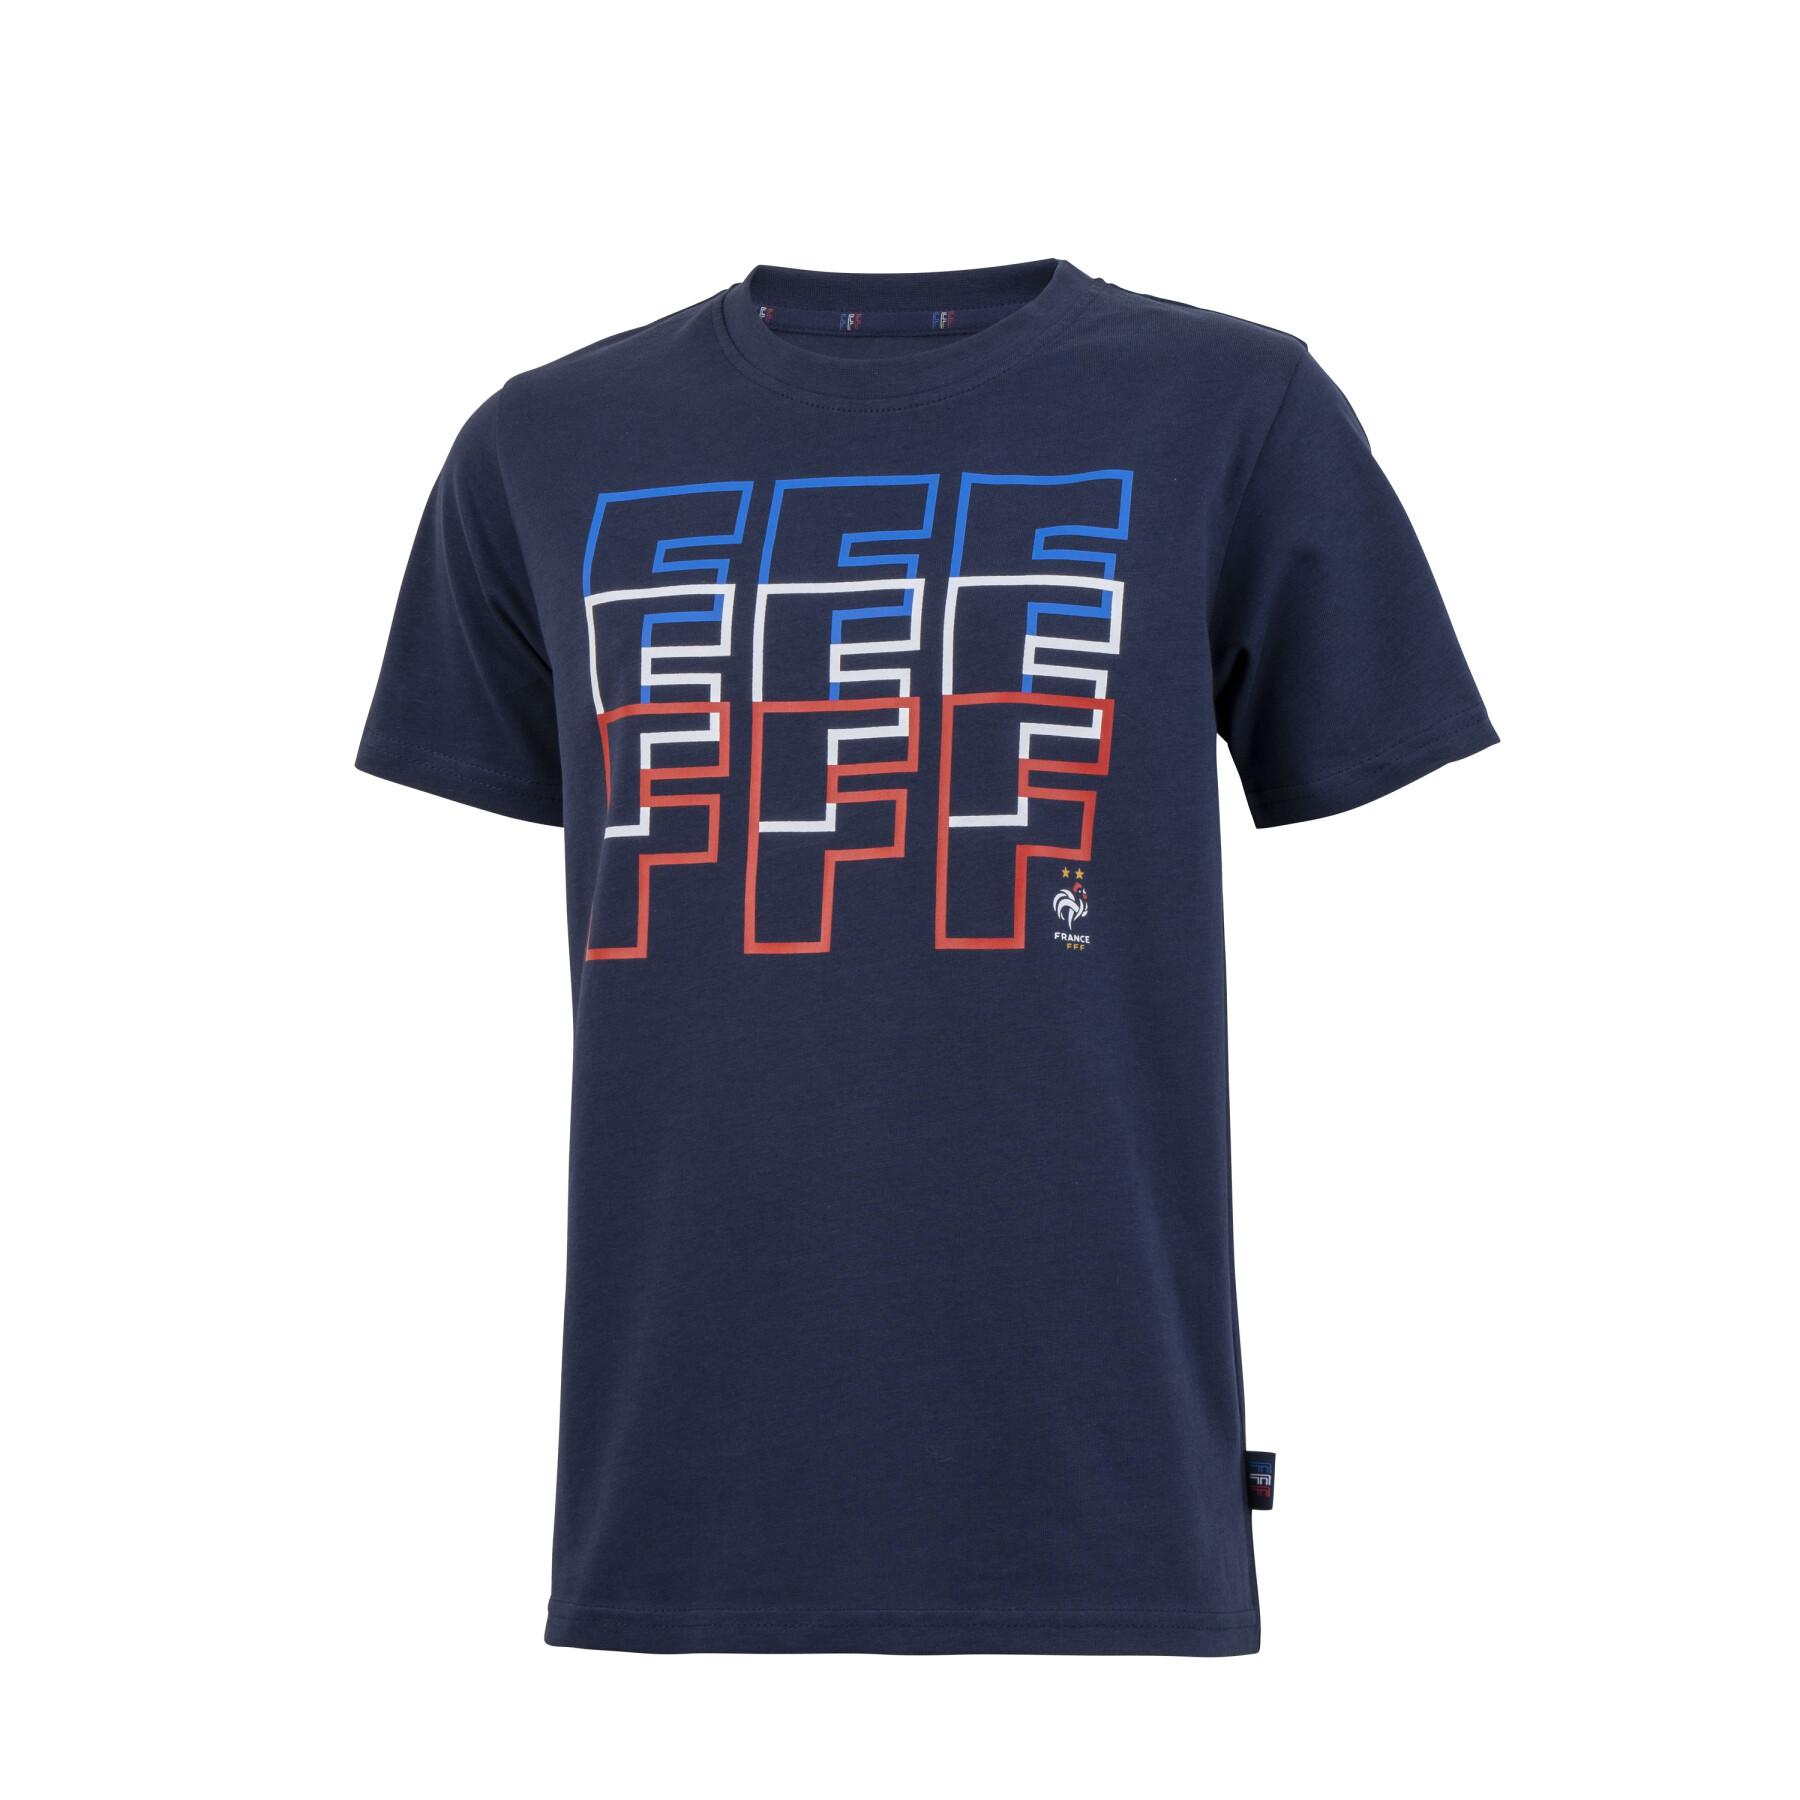 Kinder-T-Shirt Frankreich Fff